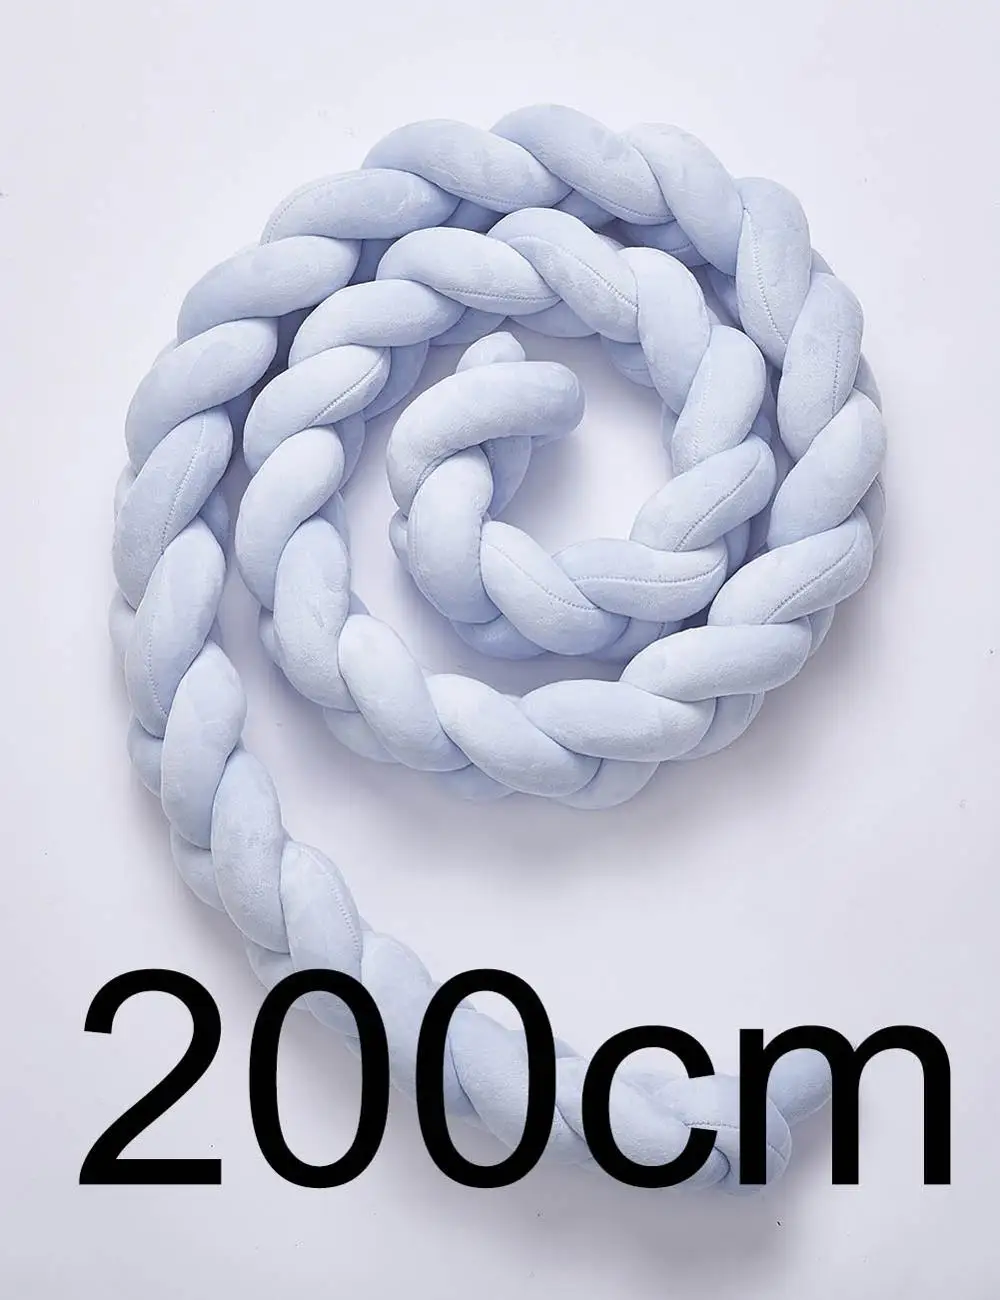 200 см Детские накладка на перила кроватки узел дизайн новорожденных бортики в детскую кровать защиты Cot бамперы постельные принадлежности Аксессуары для младенцев Room Decor - Цвет: Blue200cm